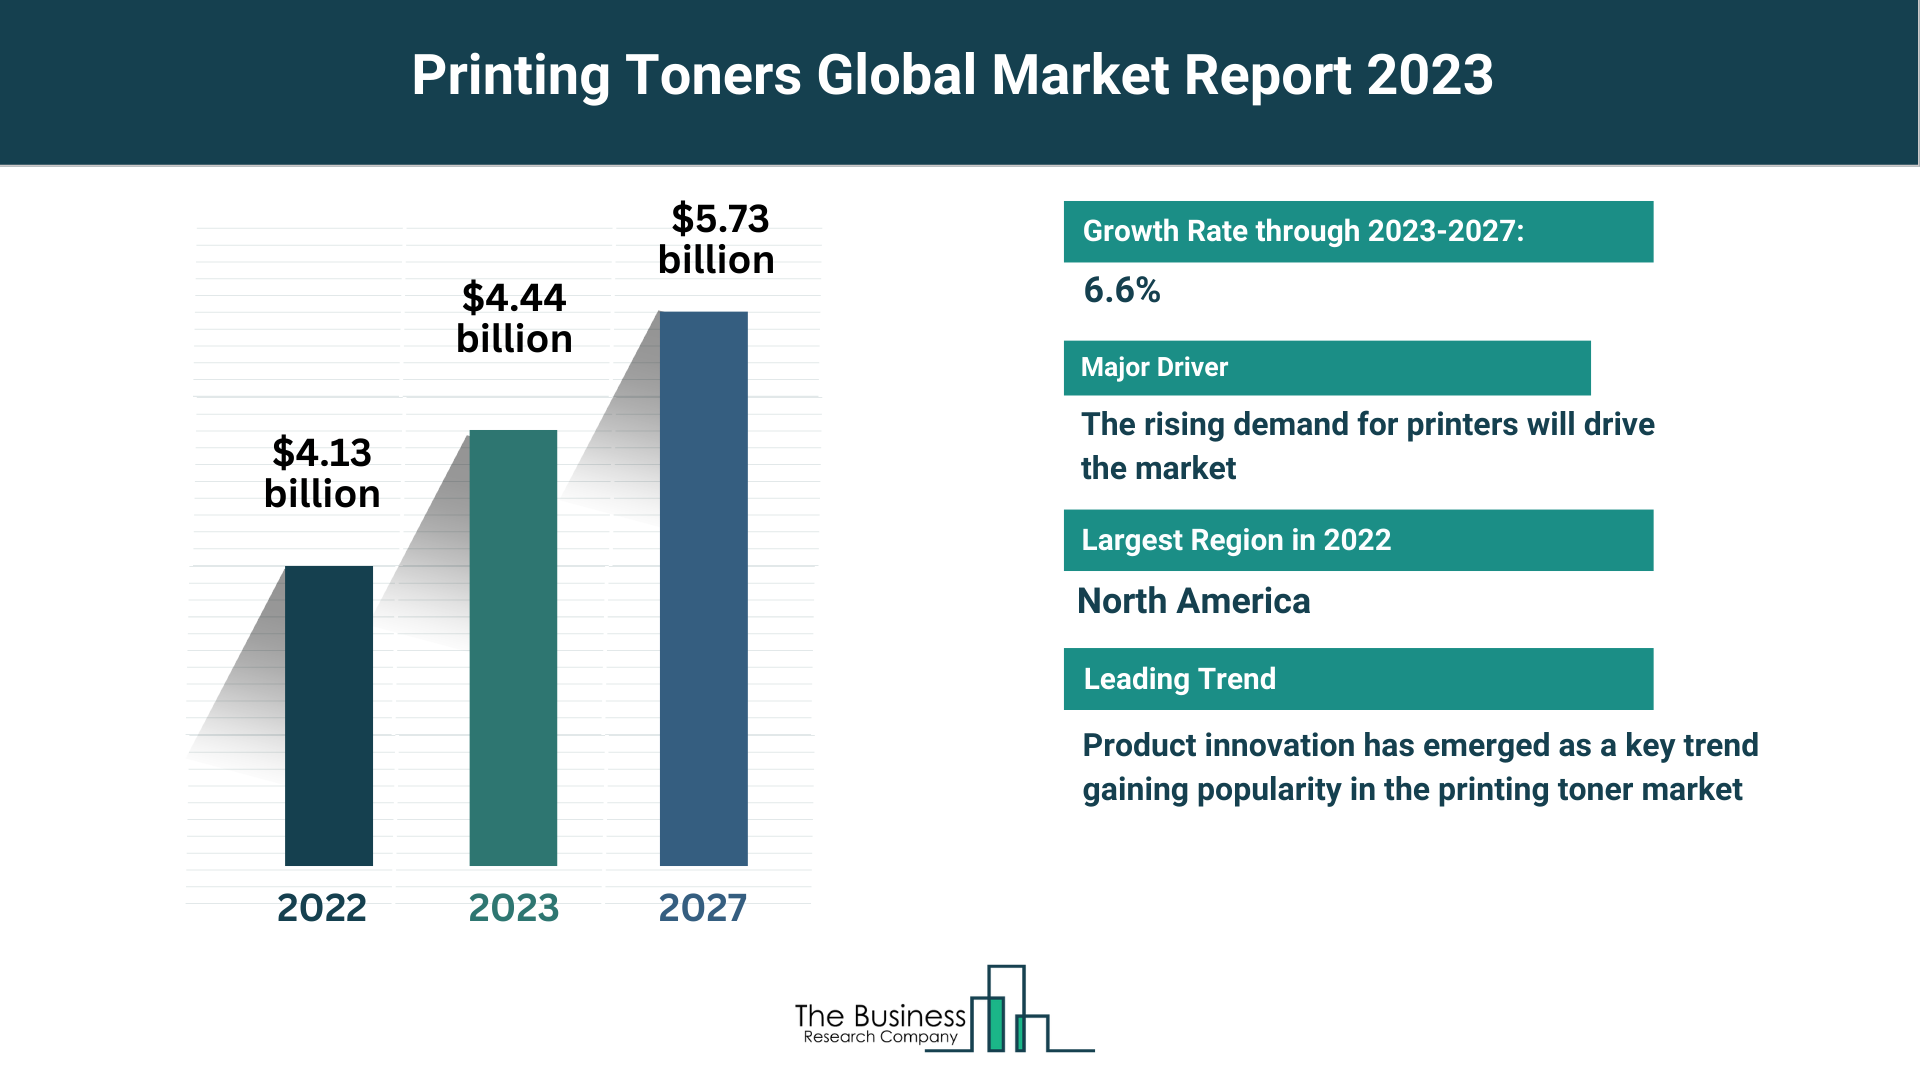 Global Printing Toners Market